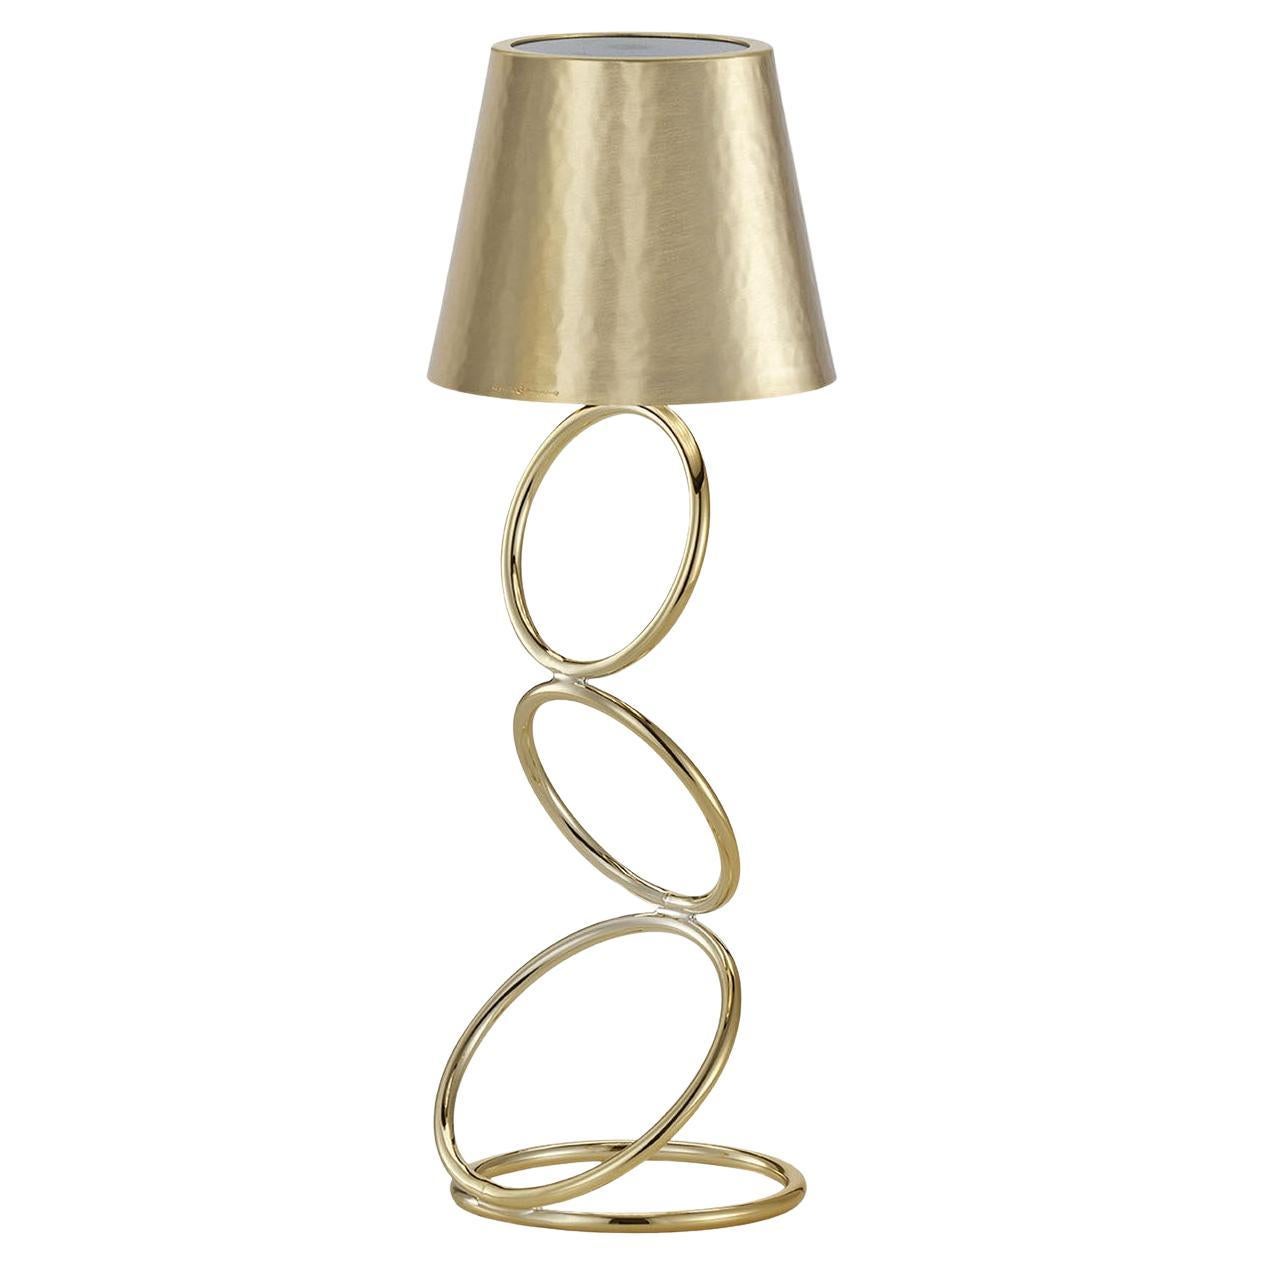 Golden Lamp #4 by Itamar Harari